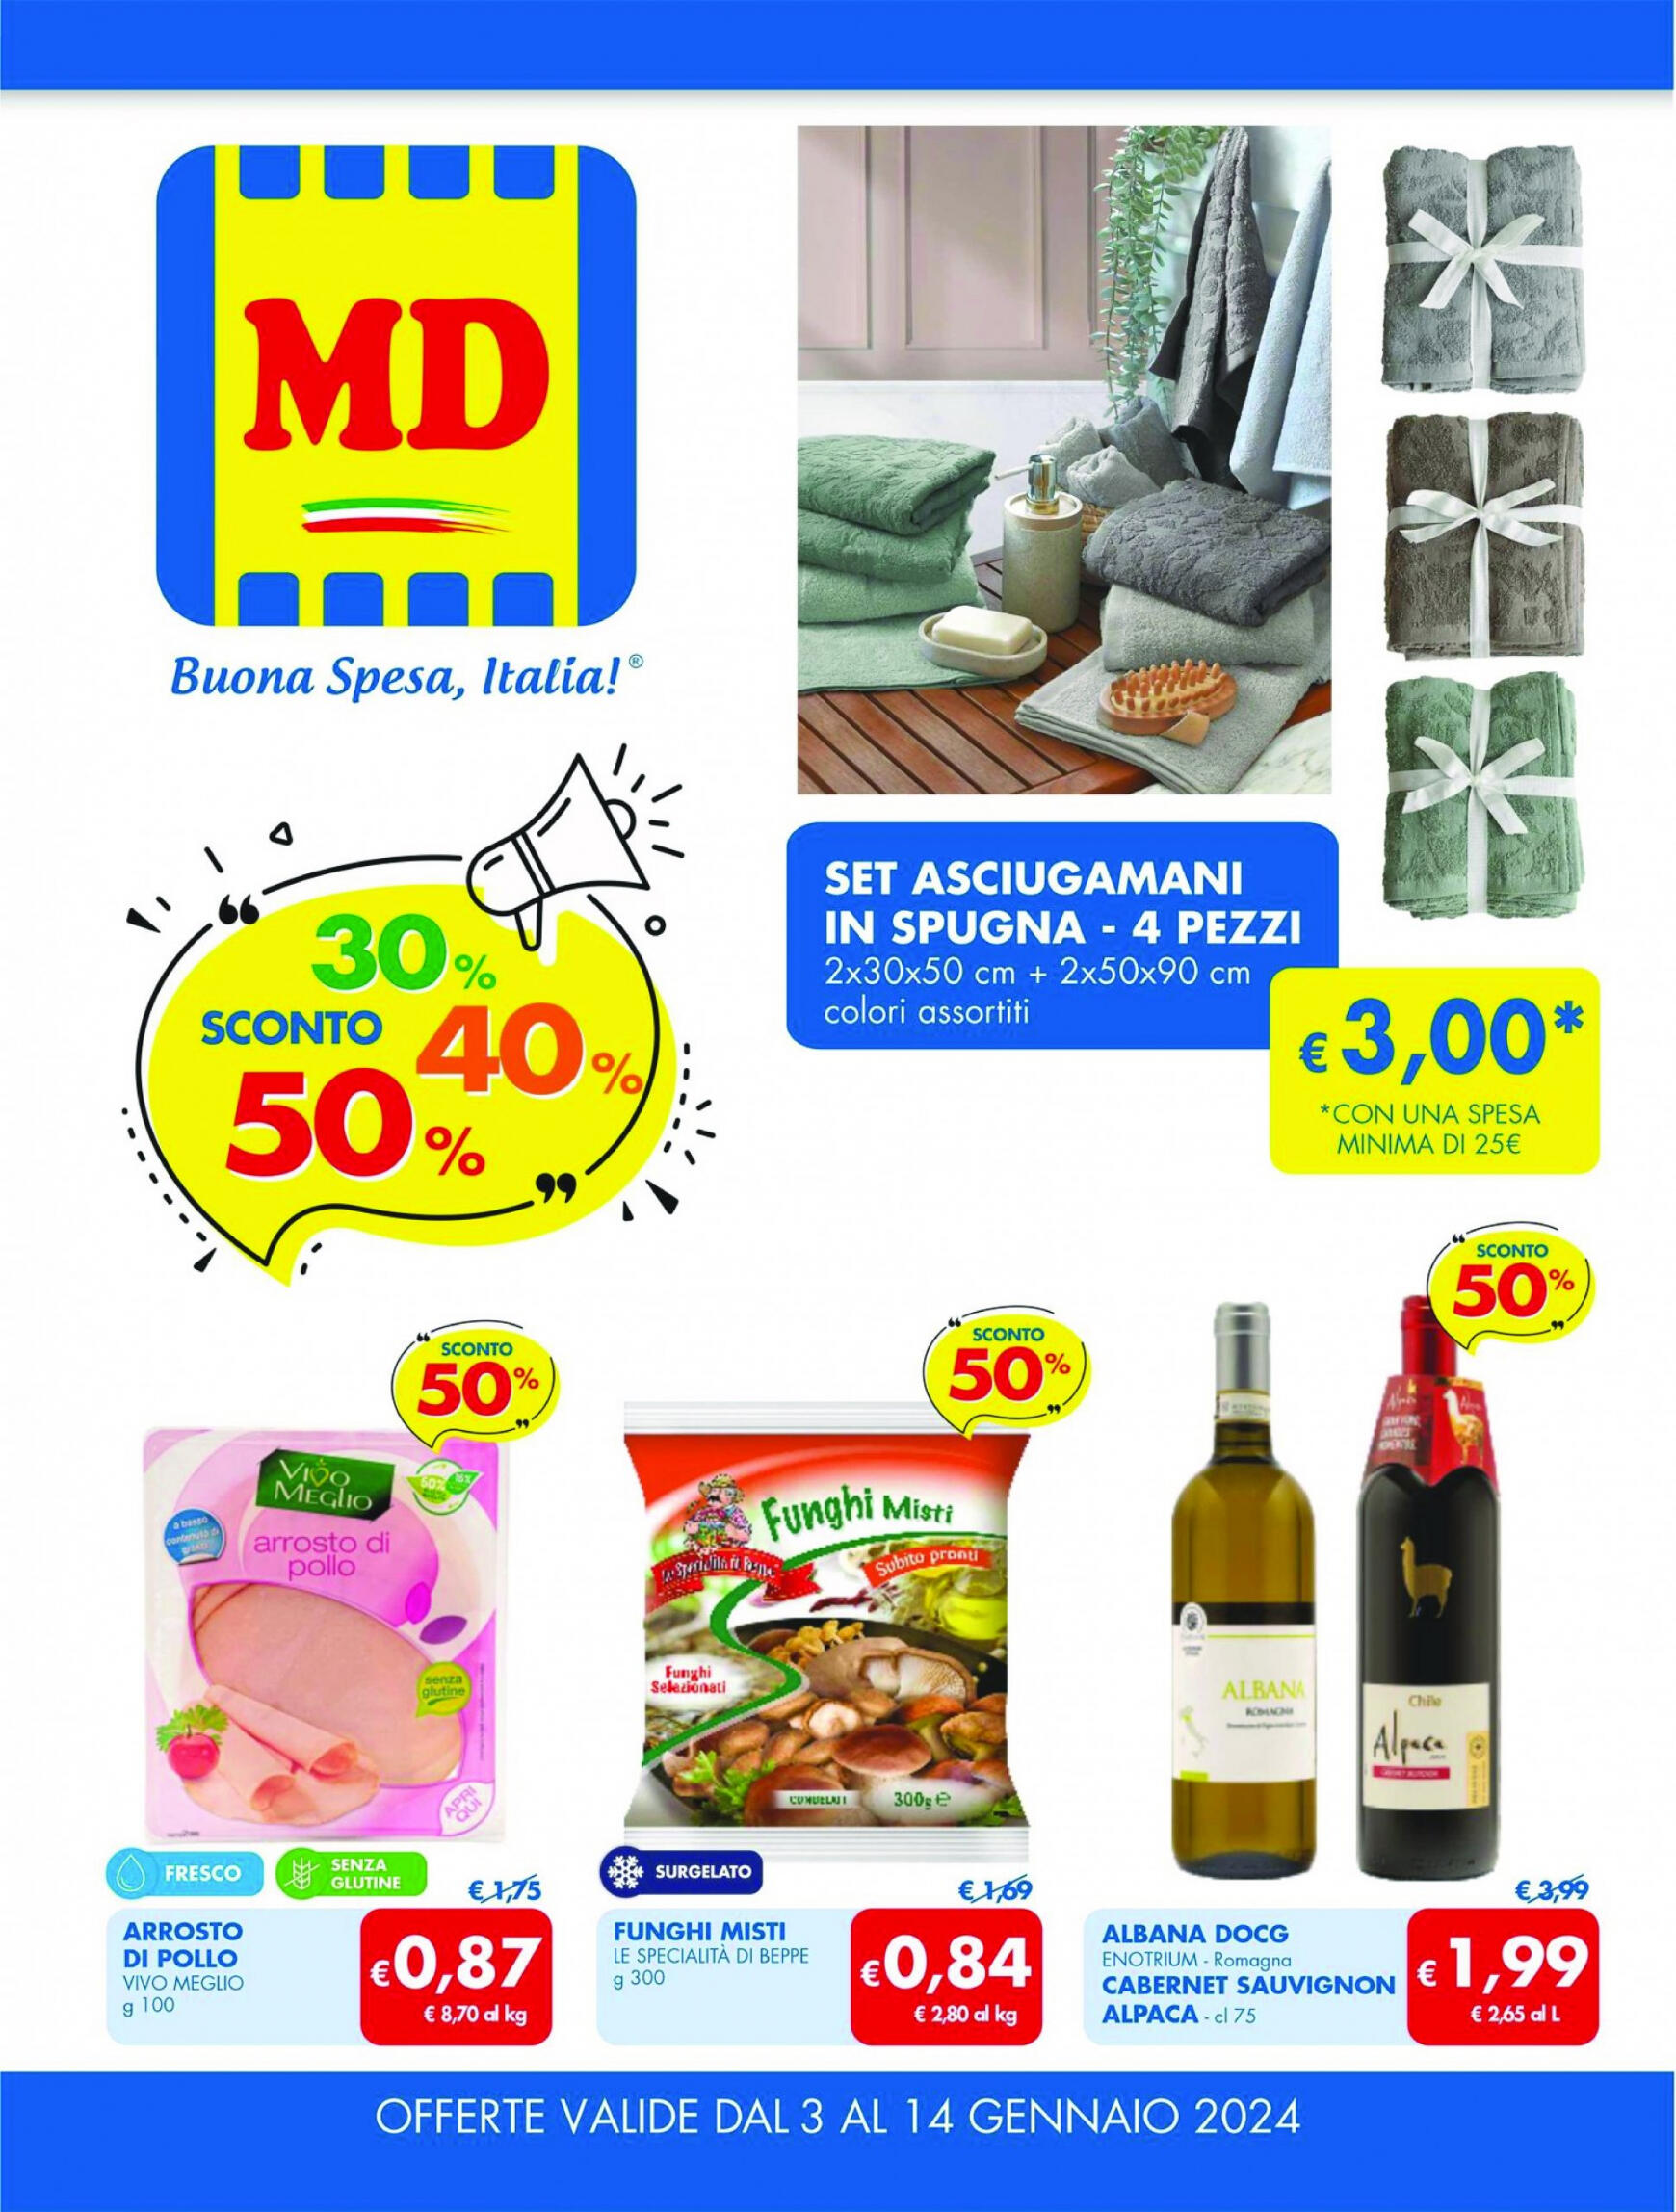 md-discount - MD valido da 03.01.2024